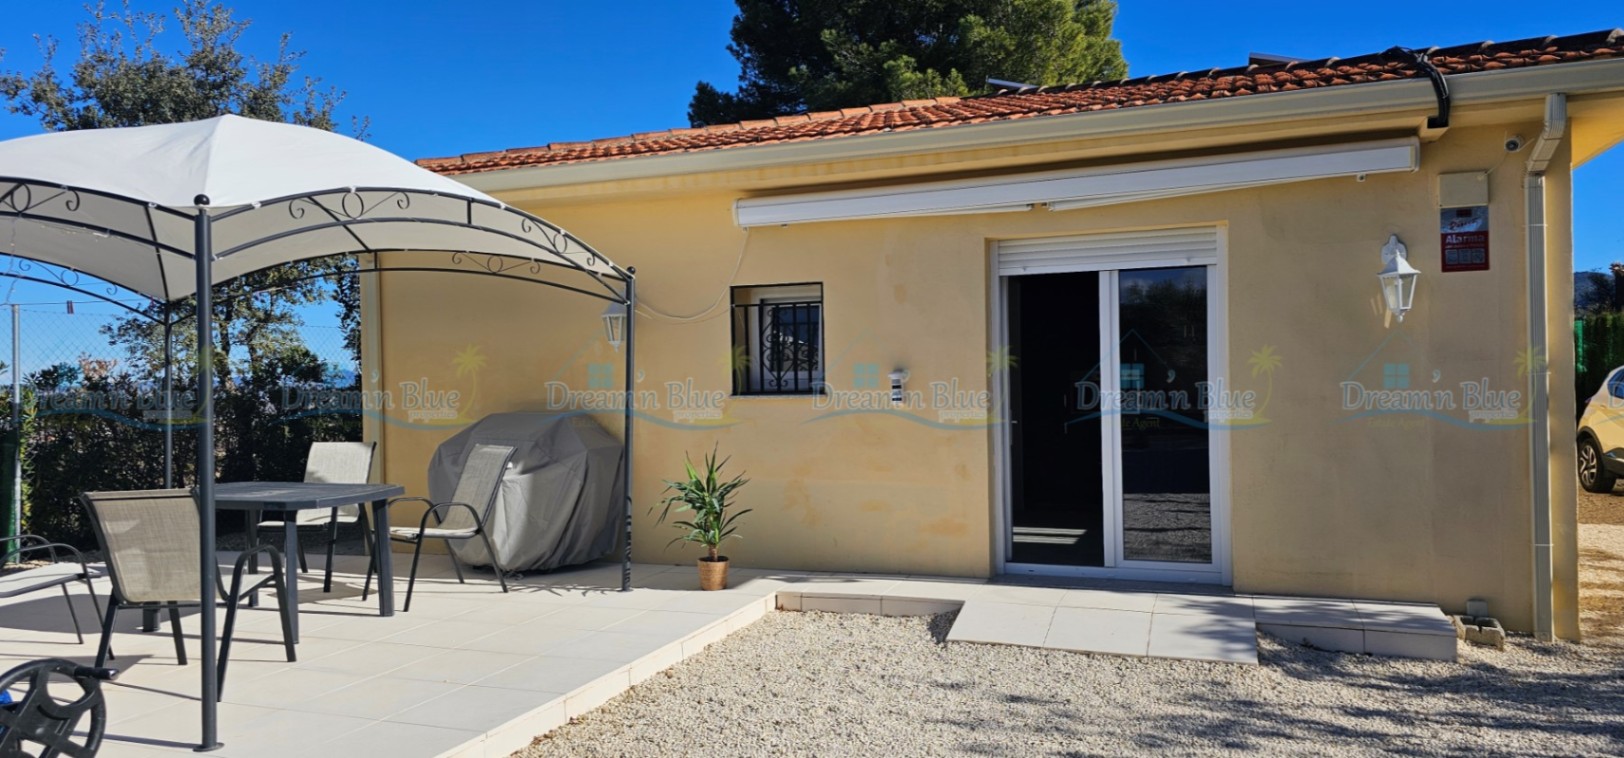 Villa à vendre dans la région d’Albaida